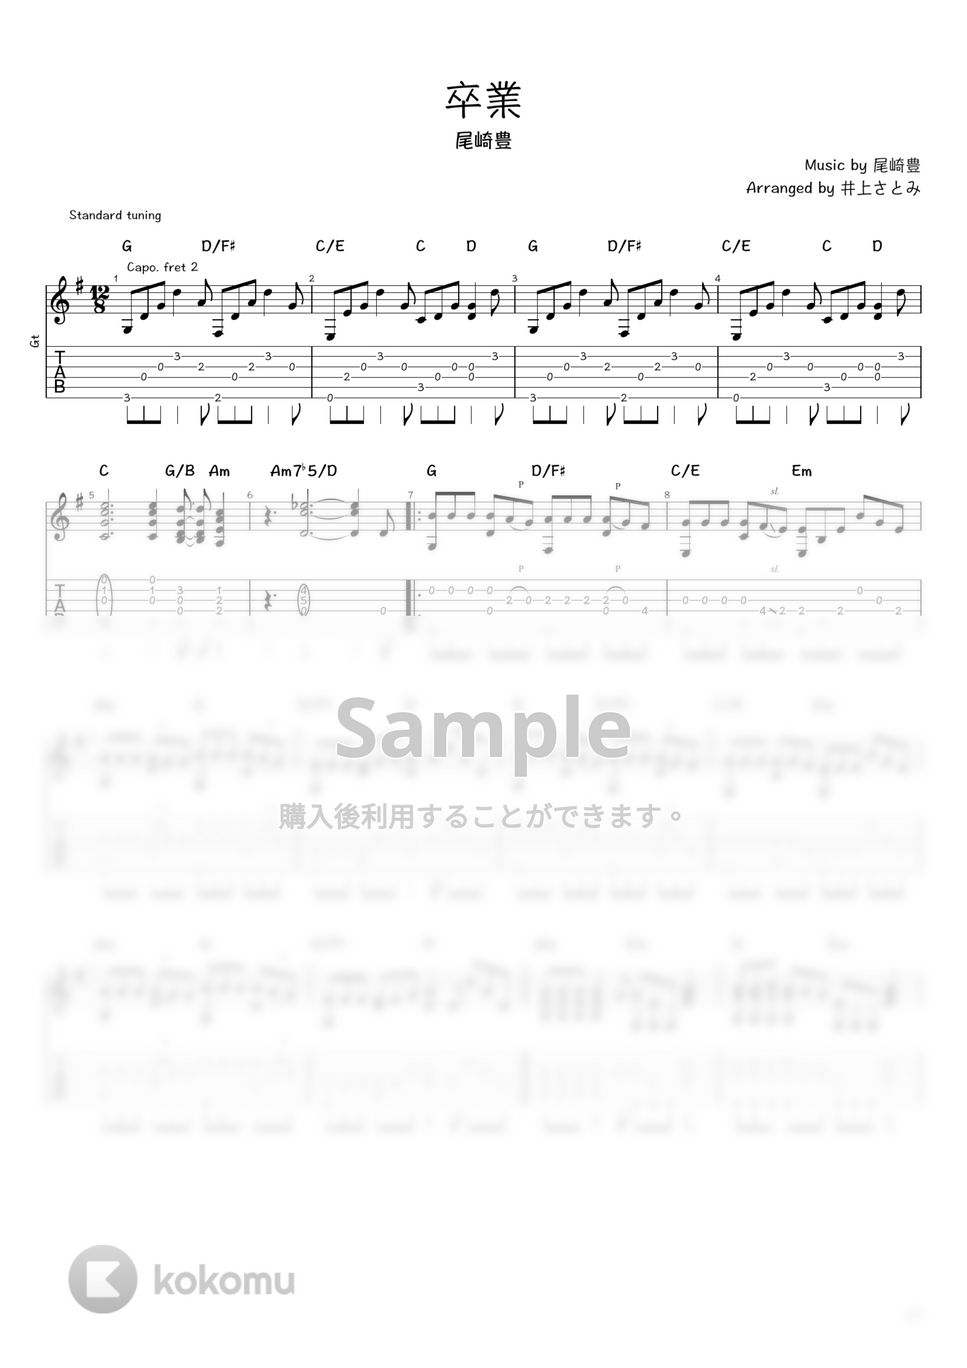 尾崎豊 - 卒業 (ソロギター / タブ譜) by 井上さとみ